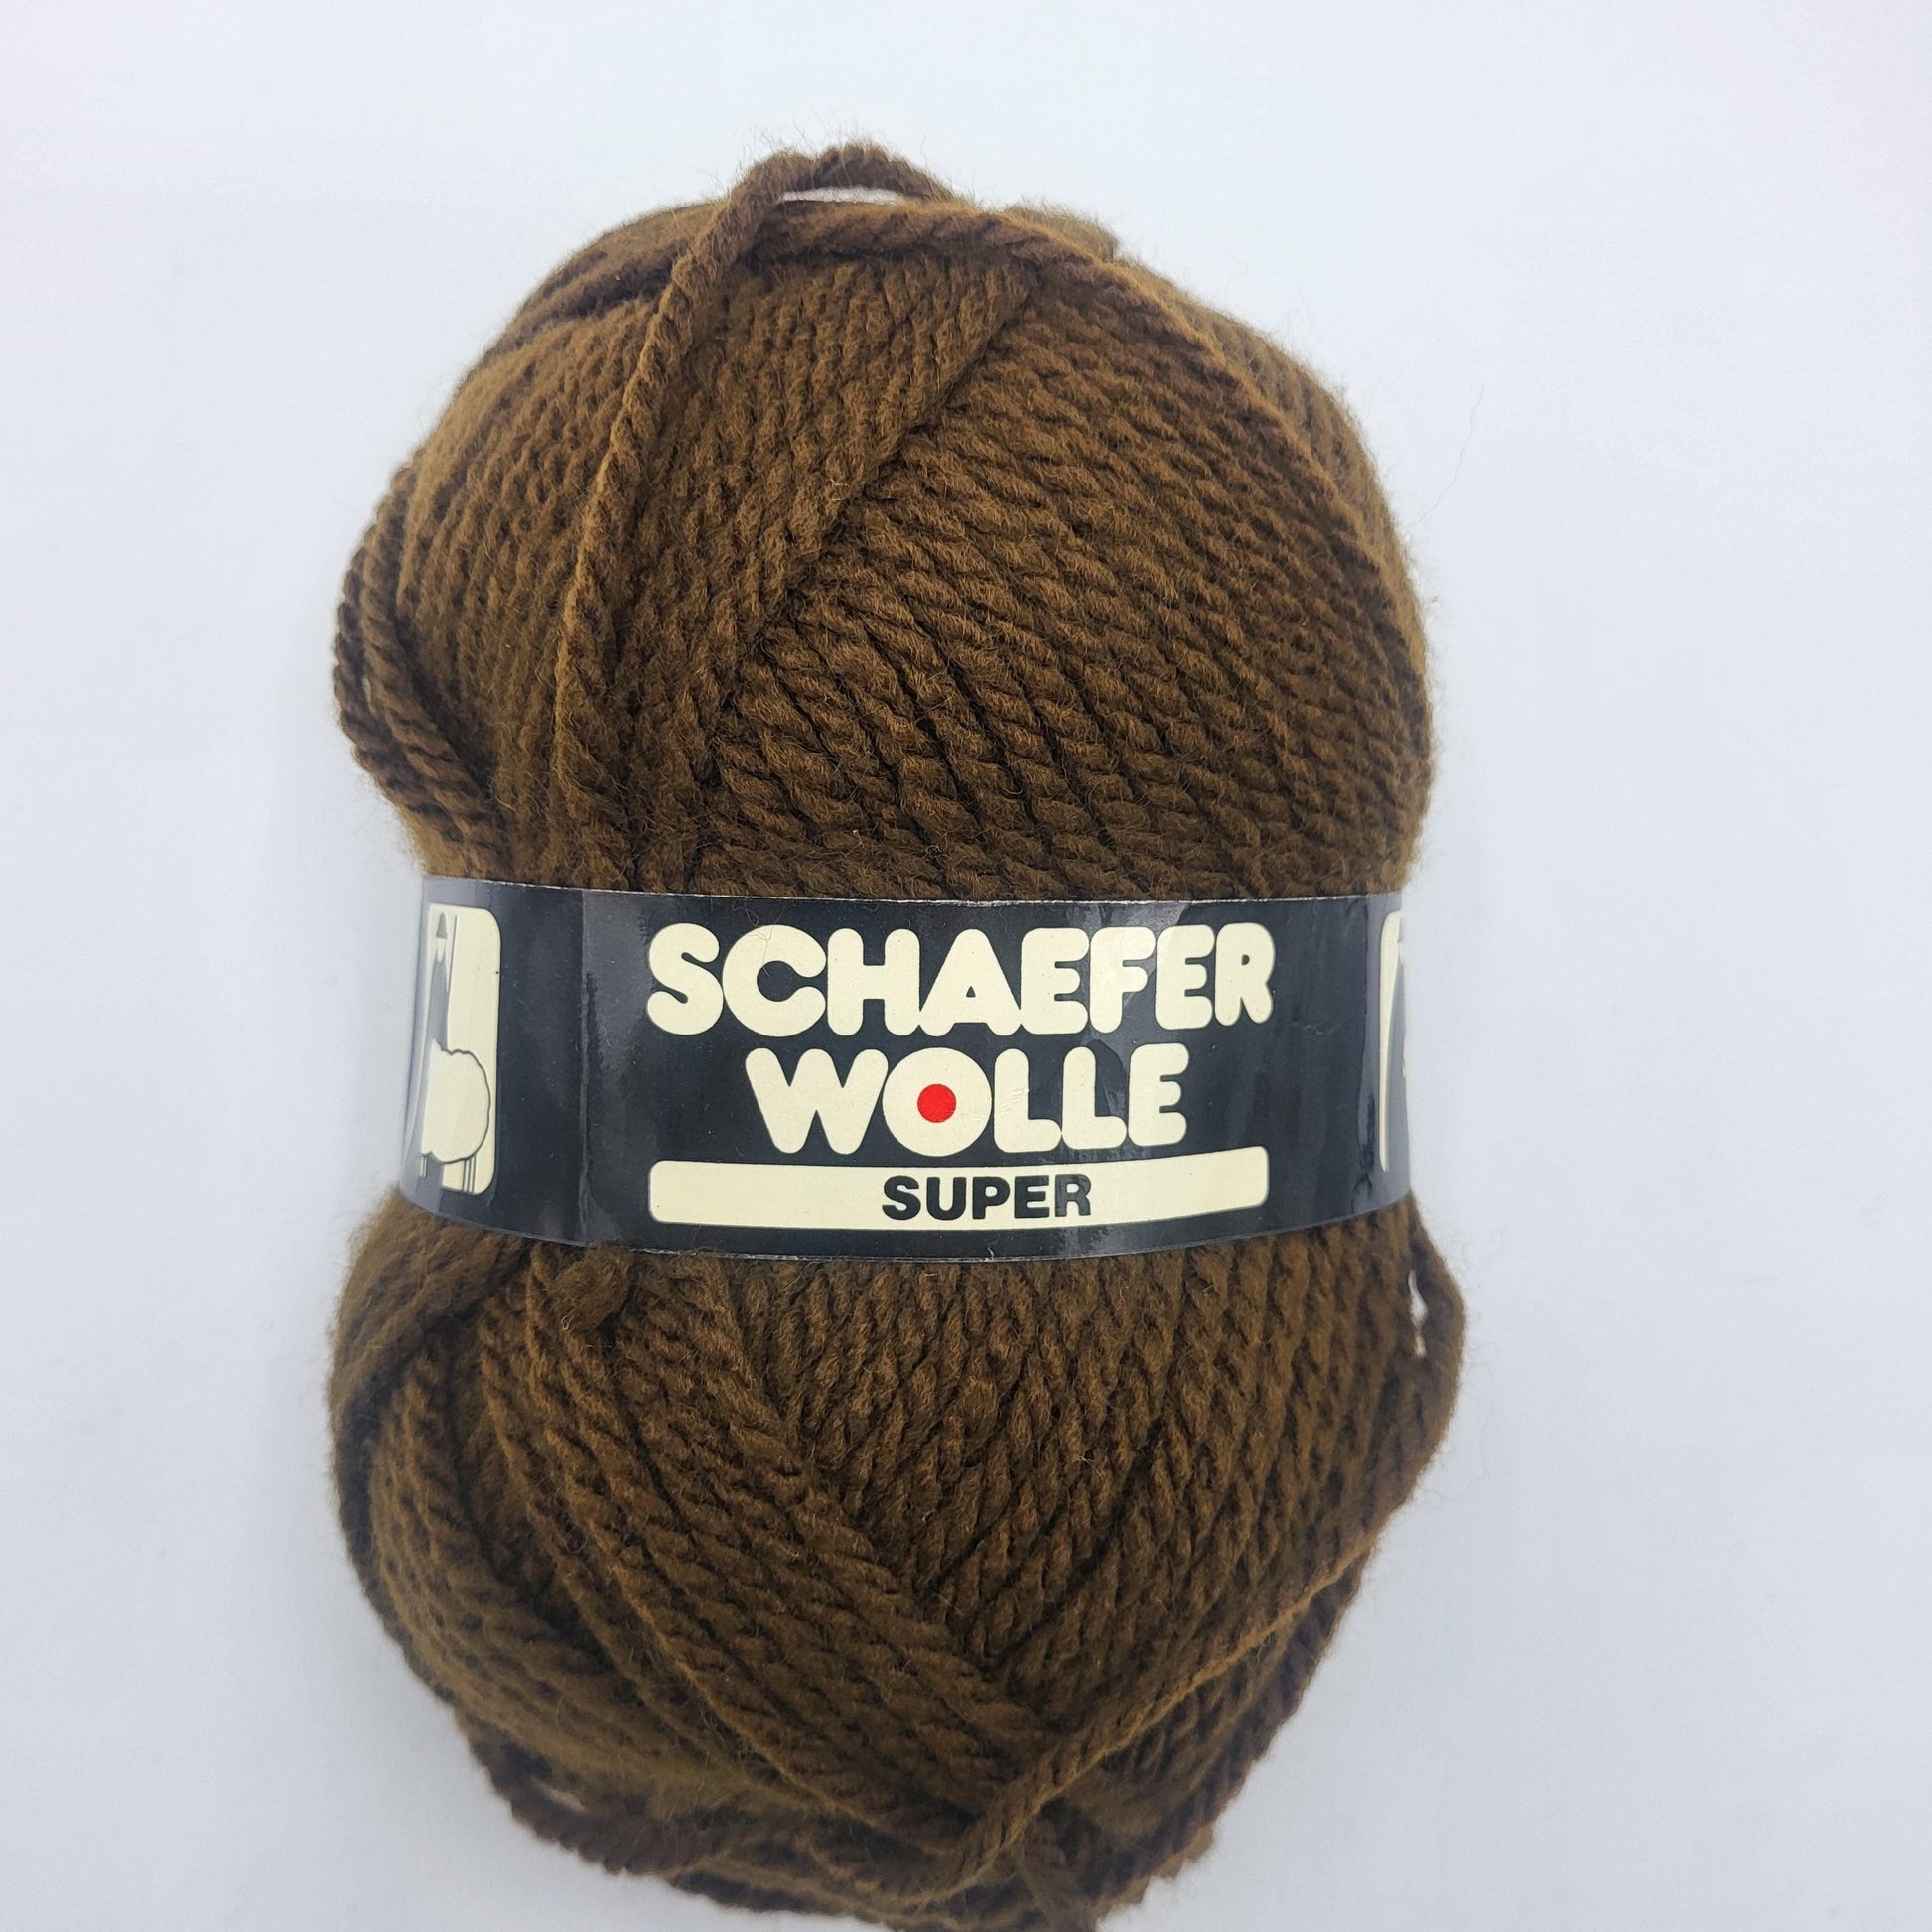 Schaefer Wolle Super 100gr Garn für kreative Strickprojekte in verschiedenen Farben - EkoDeko.de